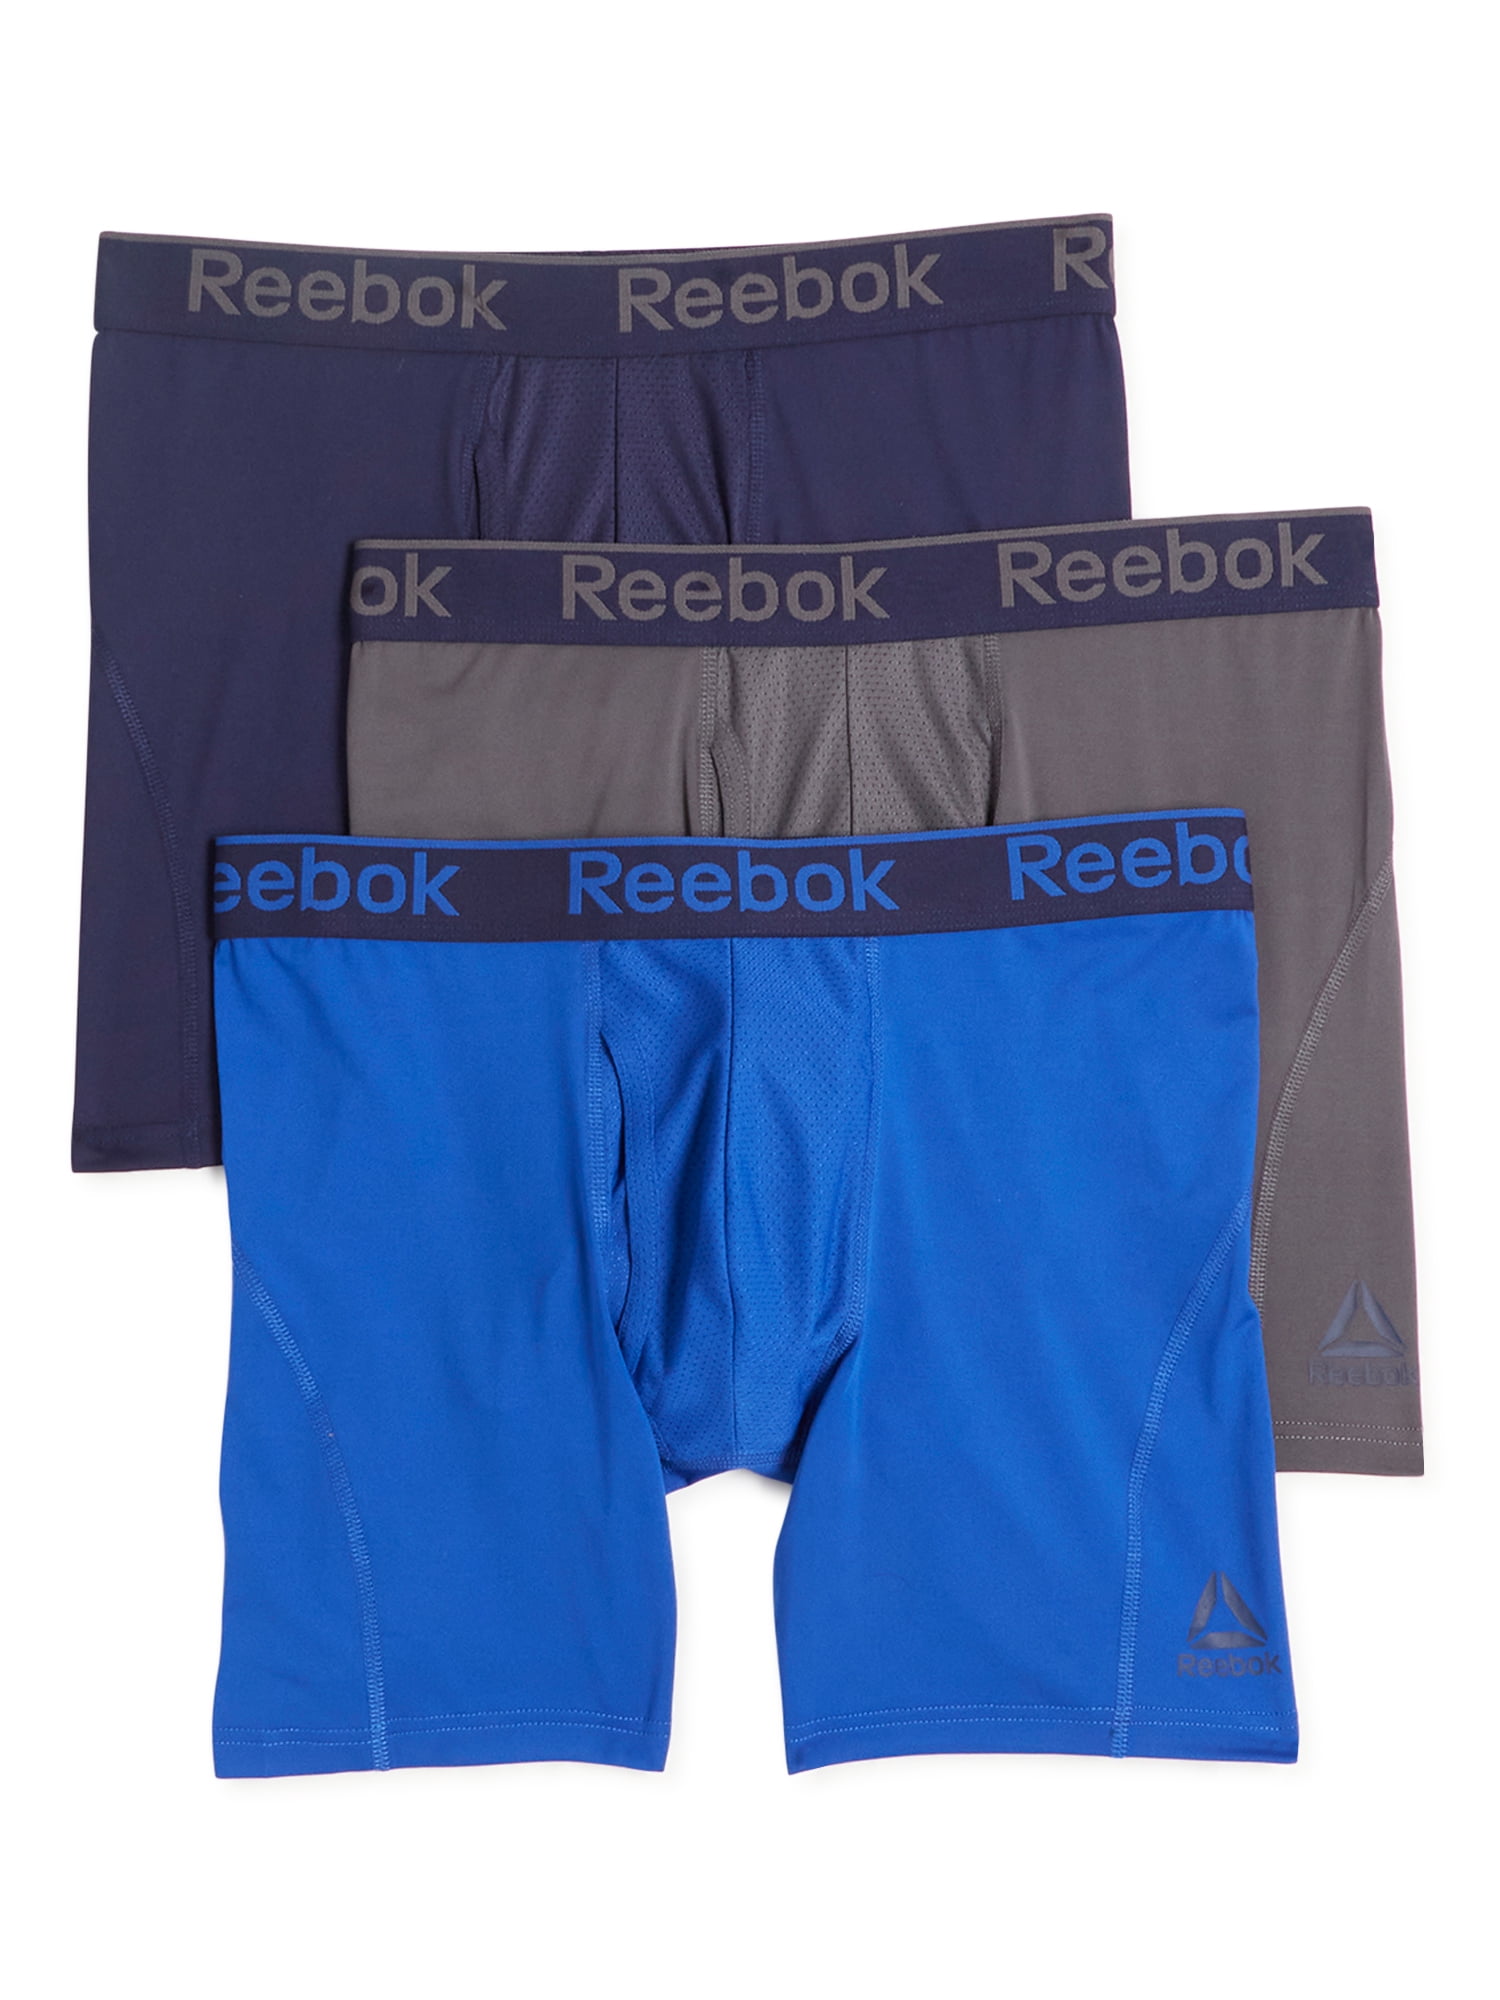 Performance Boxer Briefs 8 Pack Reebok Men's Underwear